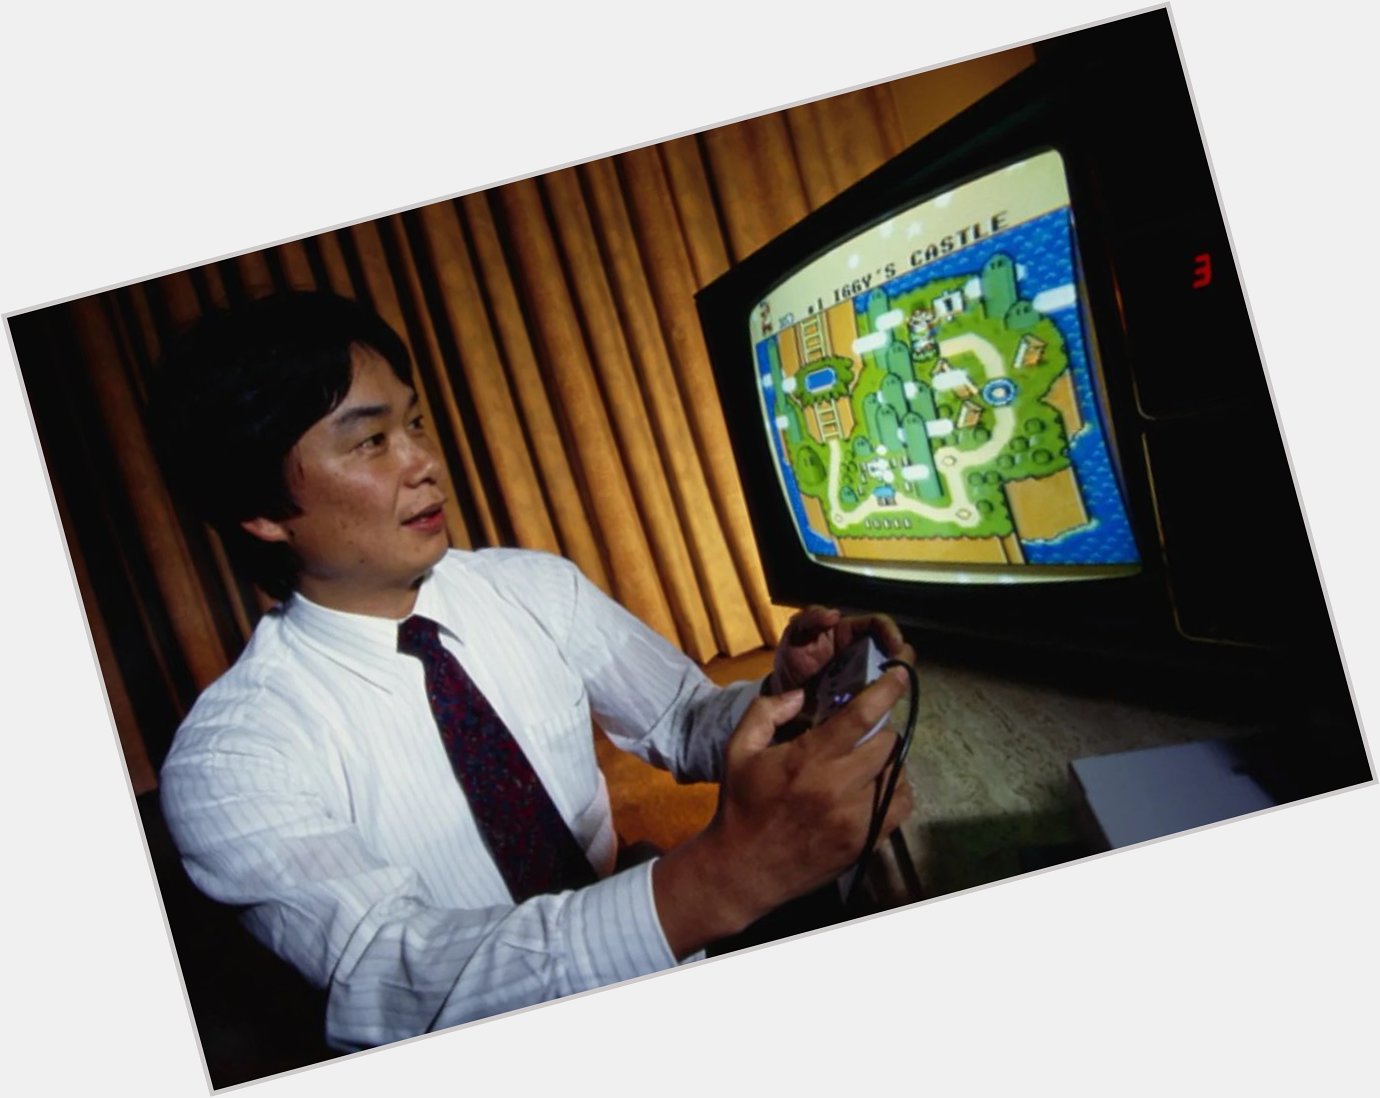 Happy birthday to Shigeru Miyamoto 